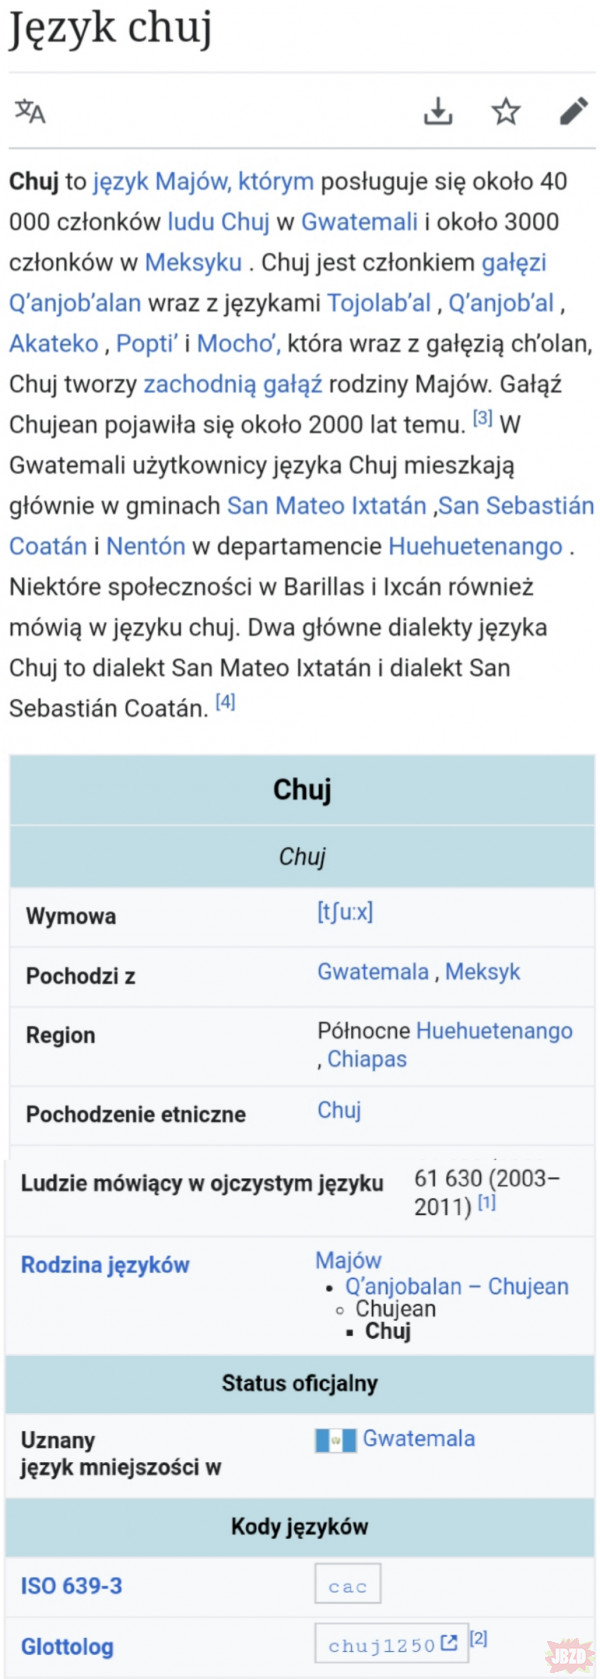 Chujowy Język Majów